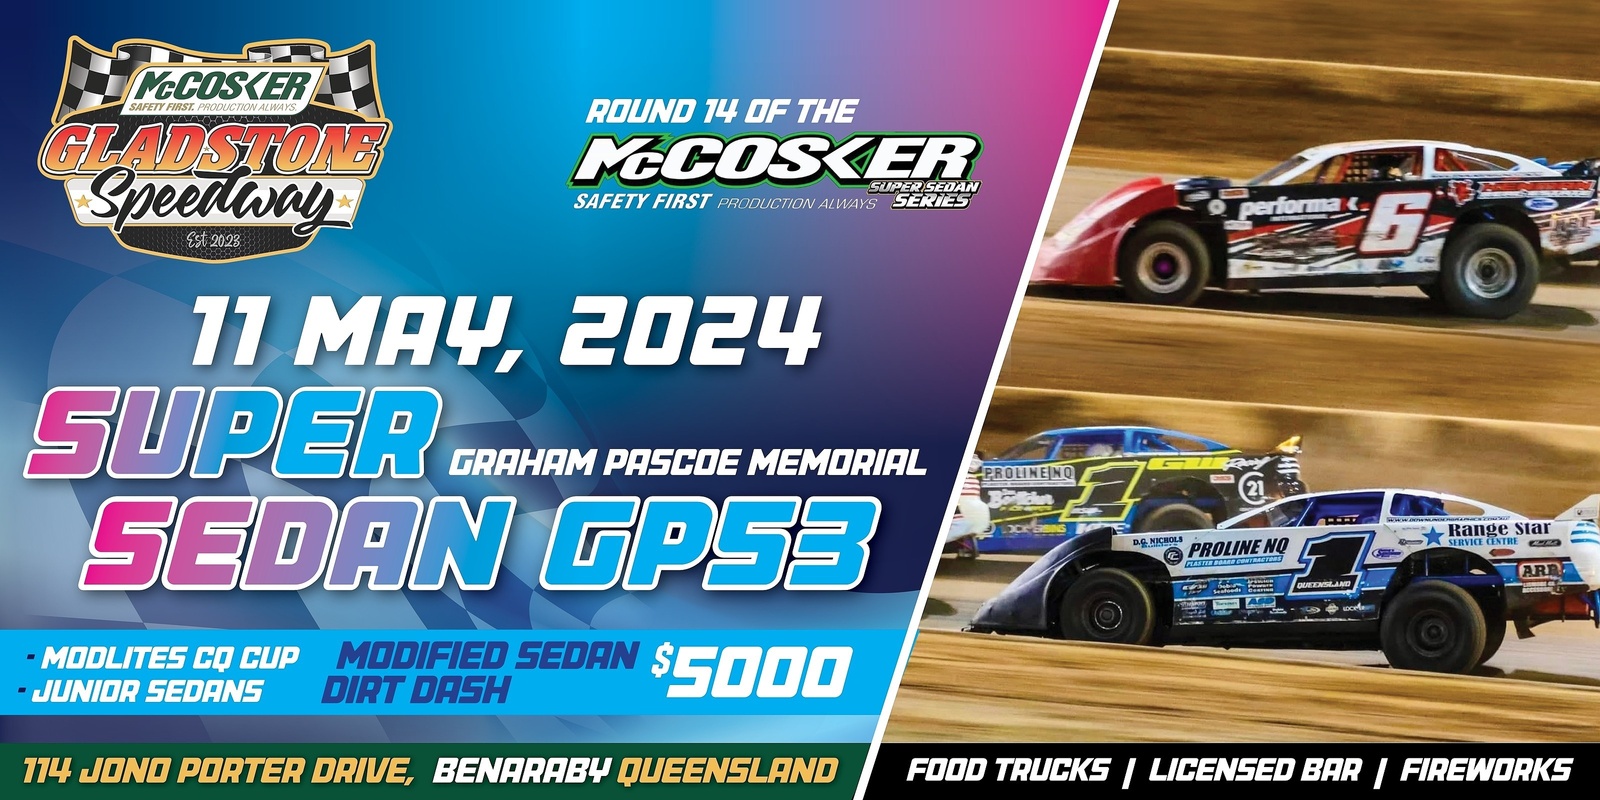 Banner image for McCosker Gladstone Speedway : Super Sedan GP53 (Round 14)  